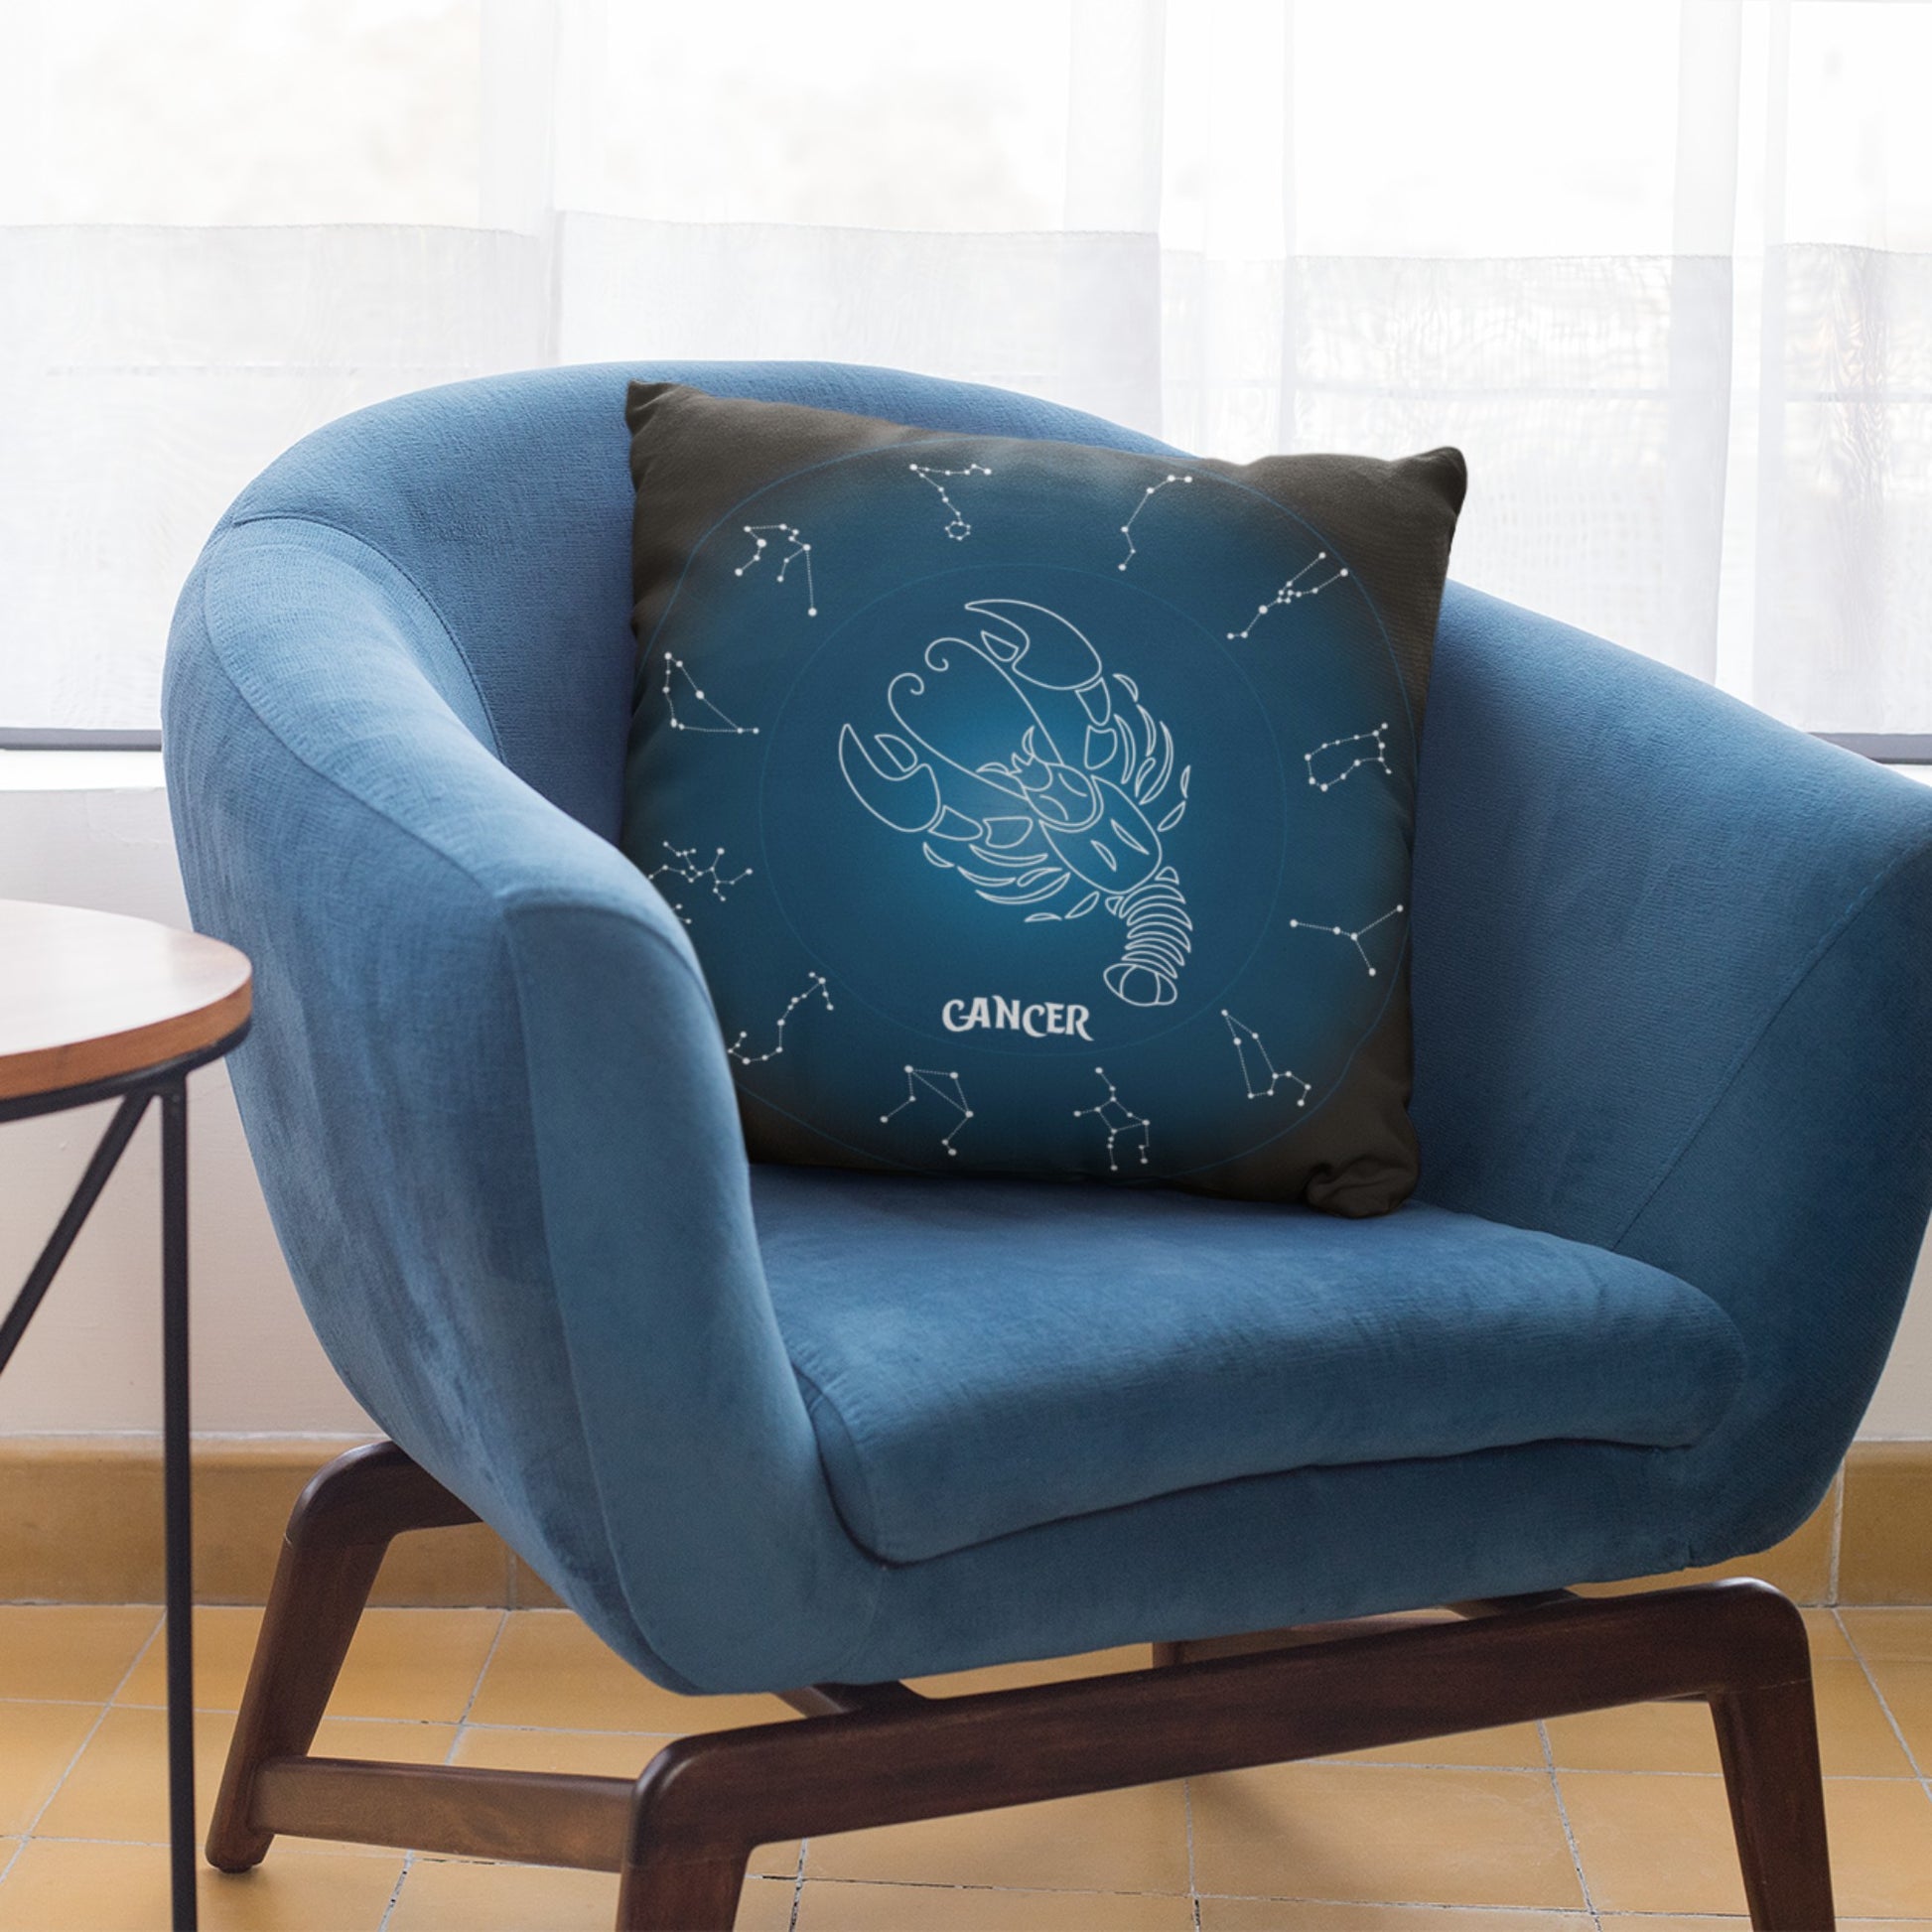 Homeezone's Cancer Horoscope Theme Pillow